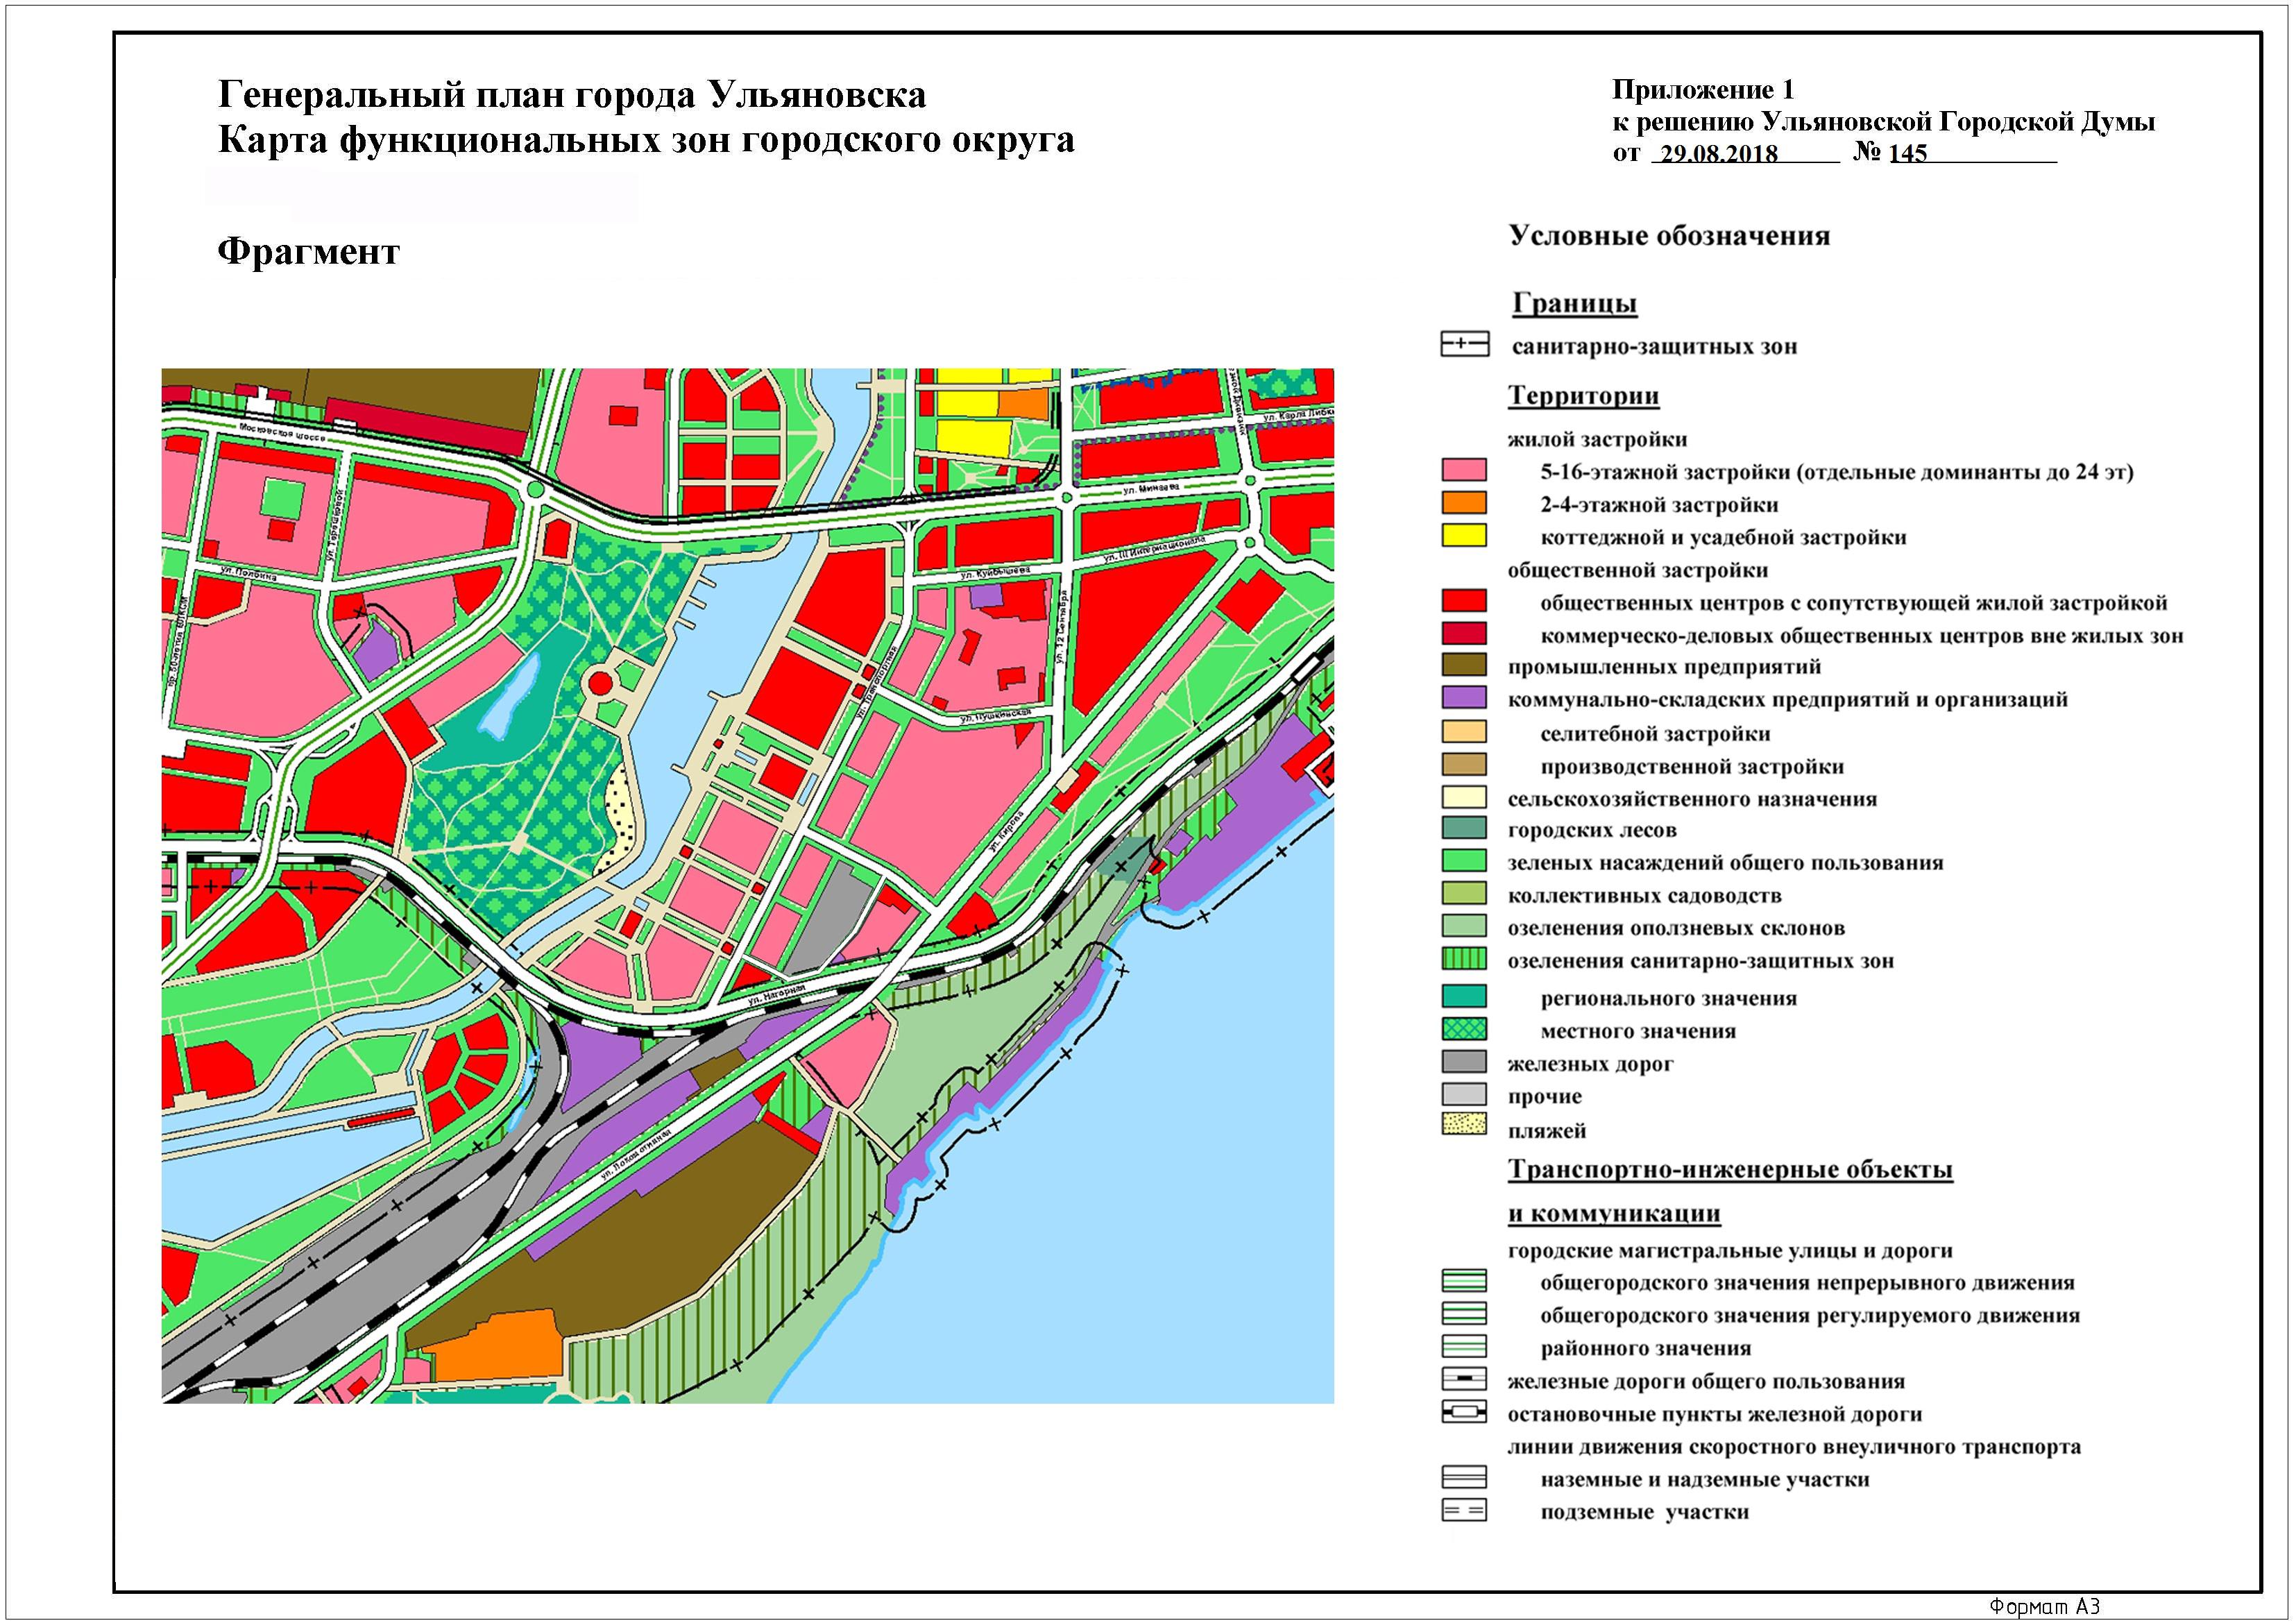 Схема функционального зонирования территории Ульяновска